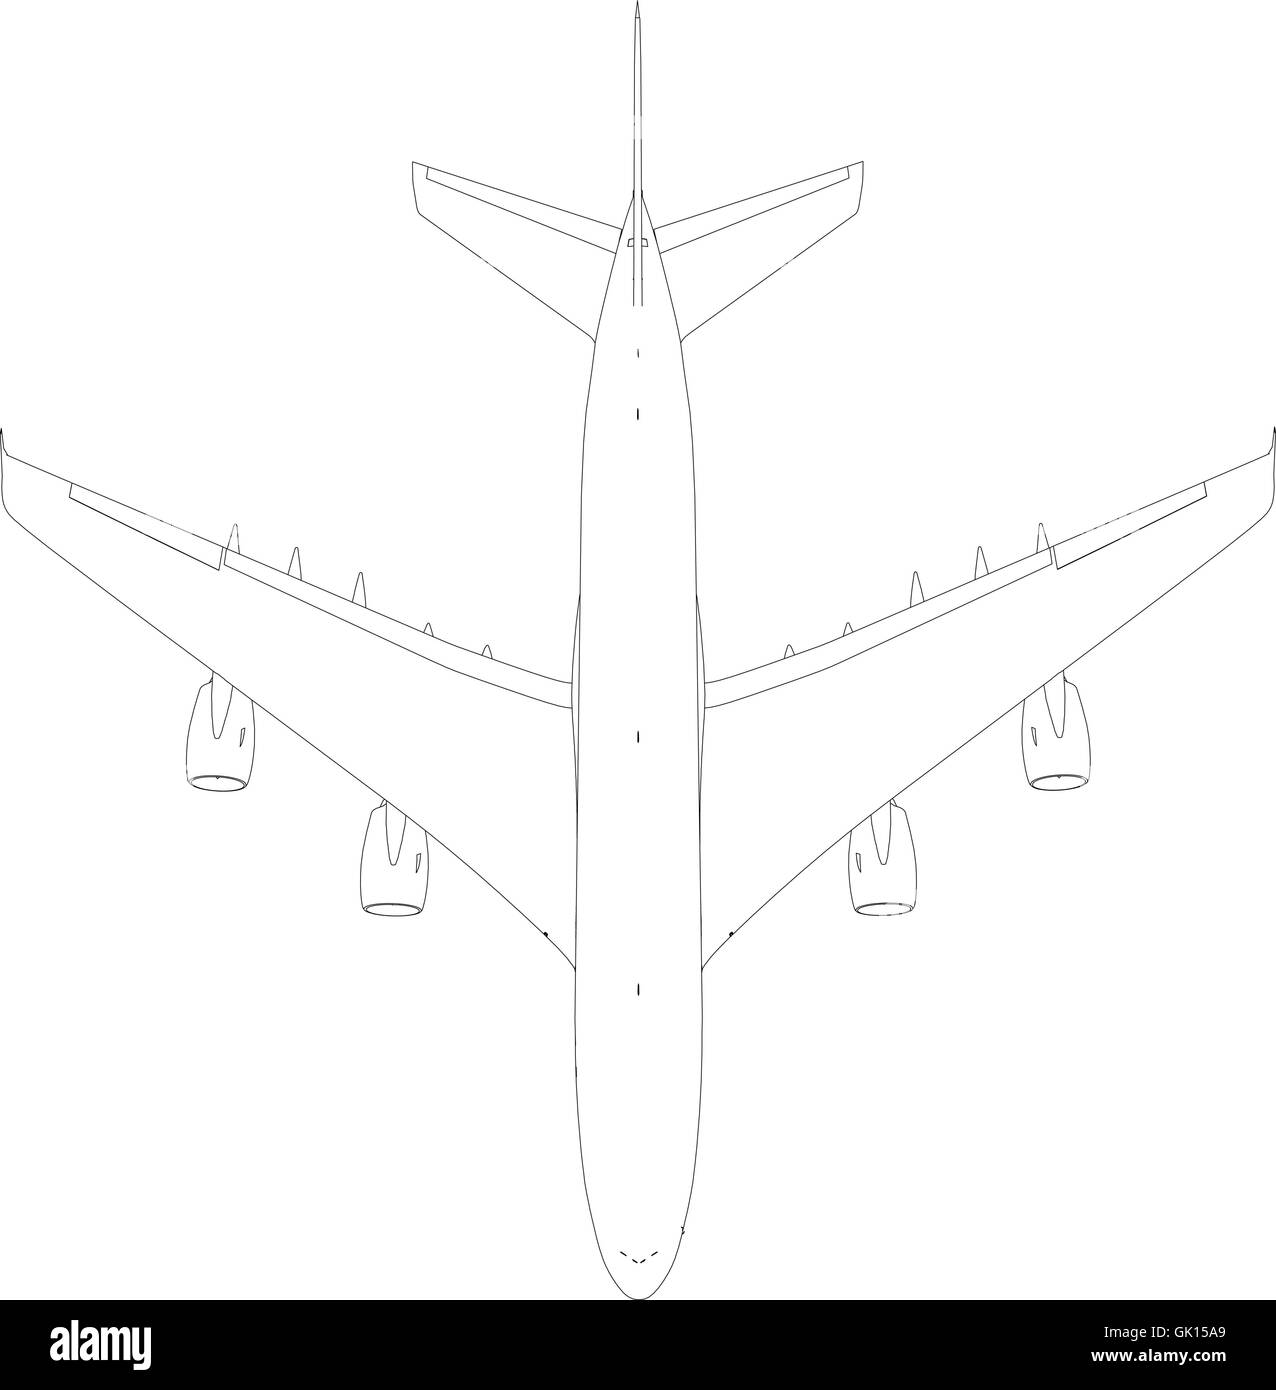 Zeichnung der Drahtrahmen Flugzeug. Ansicht von oben. Vektor-Illustration Stock Vektor